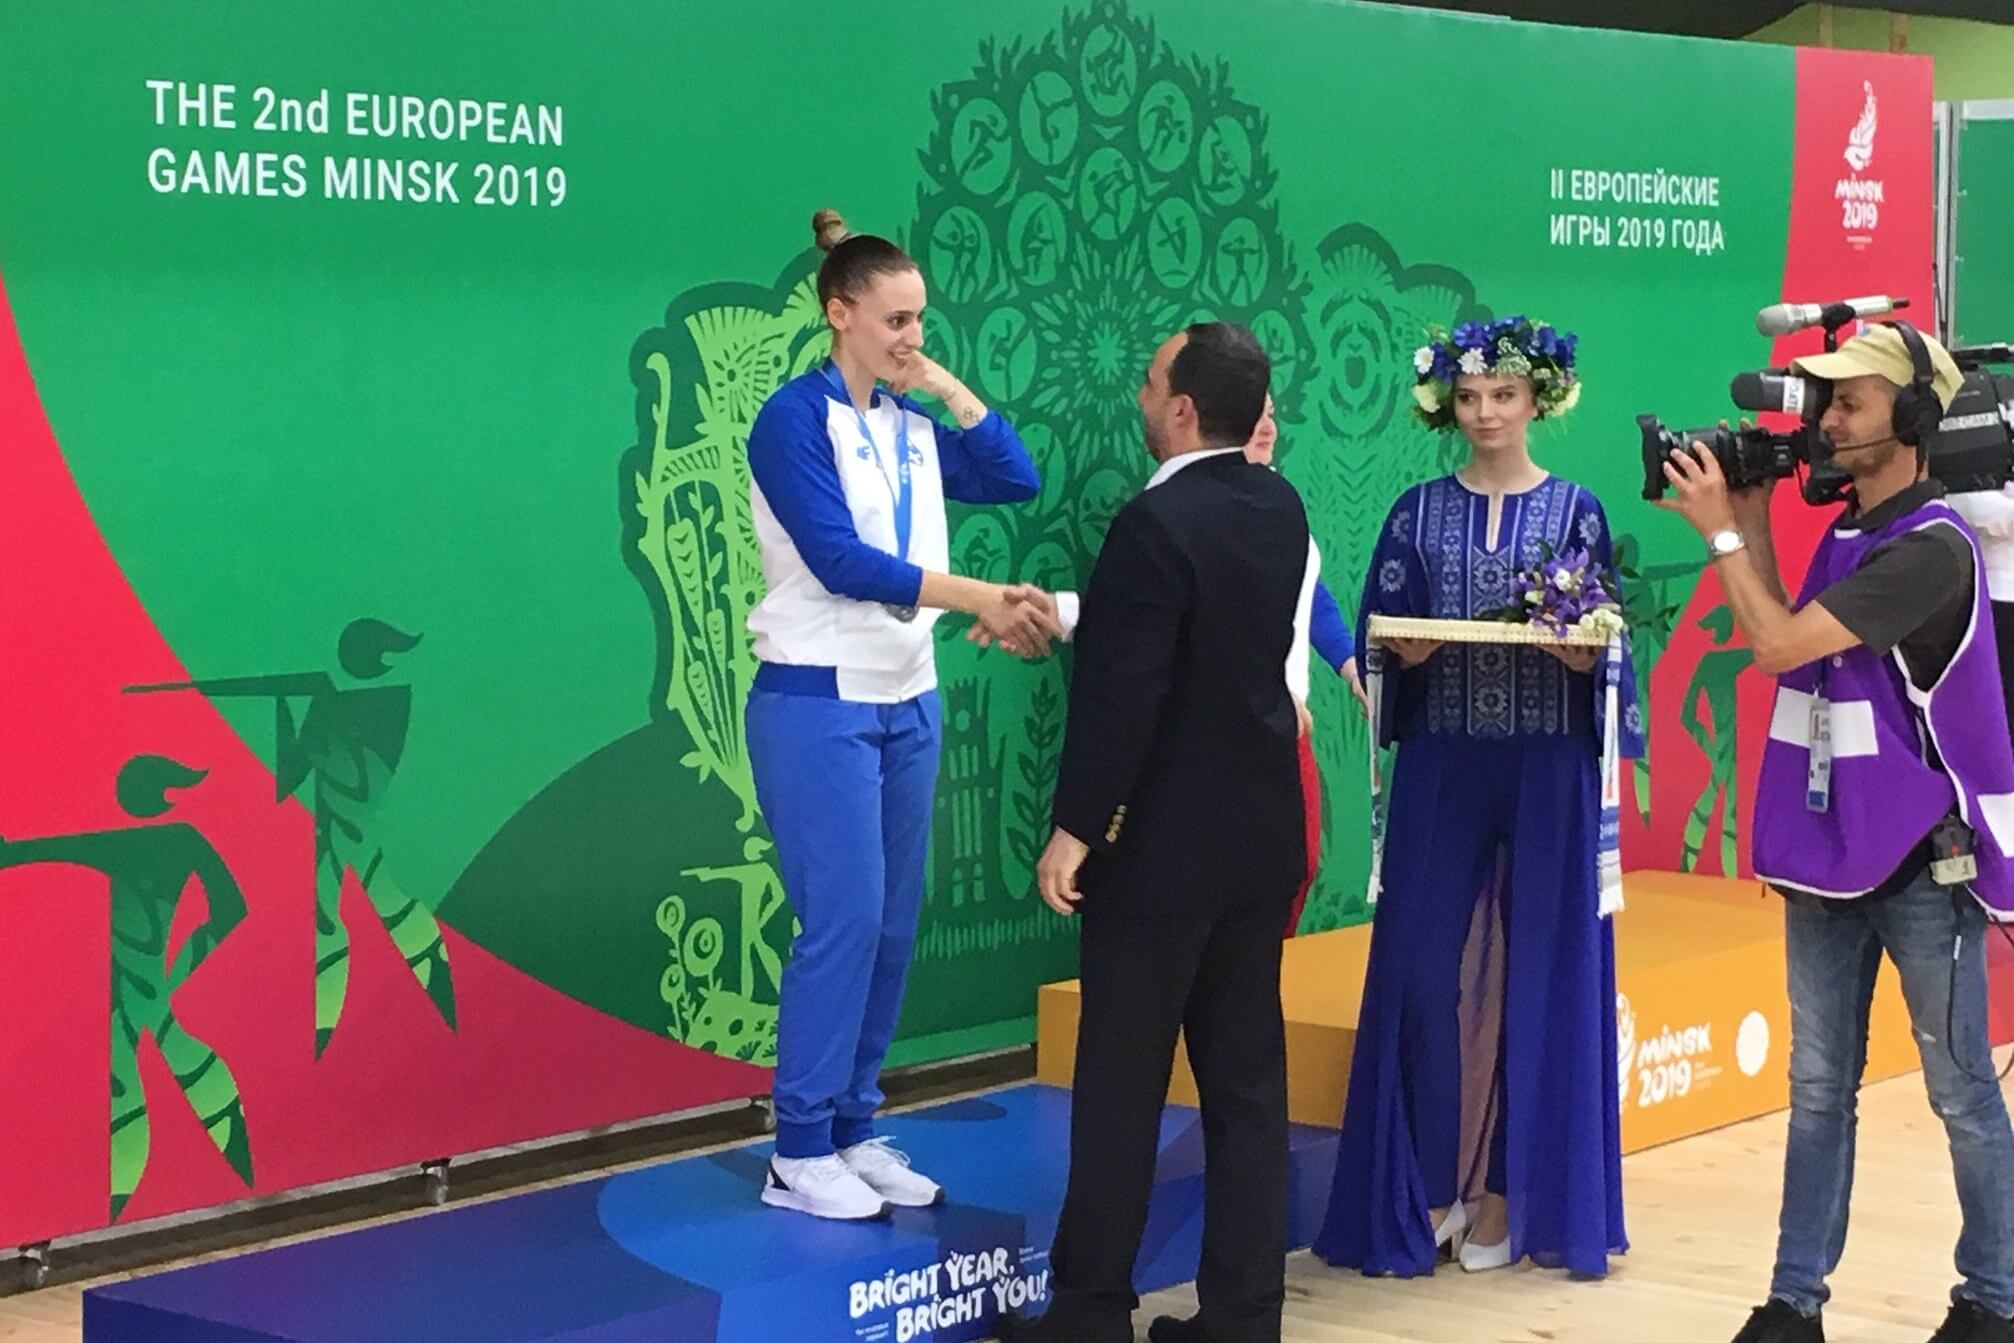 Ασημένιο μετάλλιο για την Κορακάκη στο Ευρωπαϊκό του Μινσκ